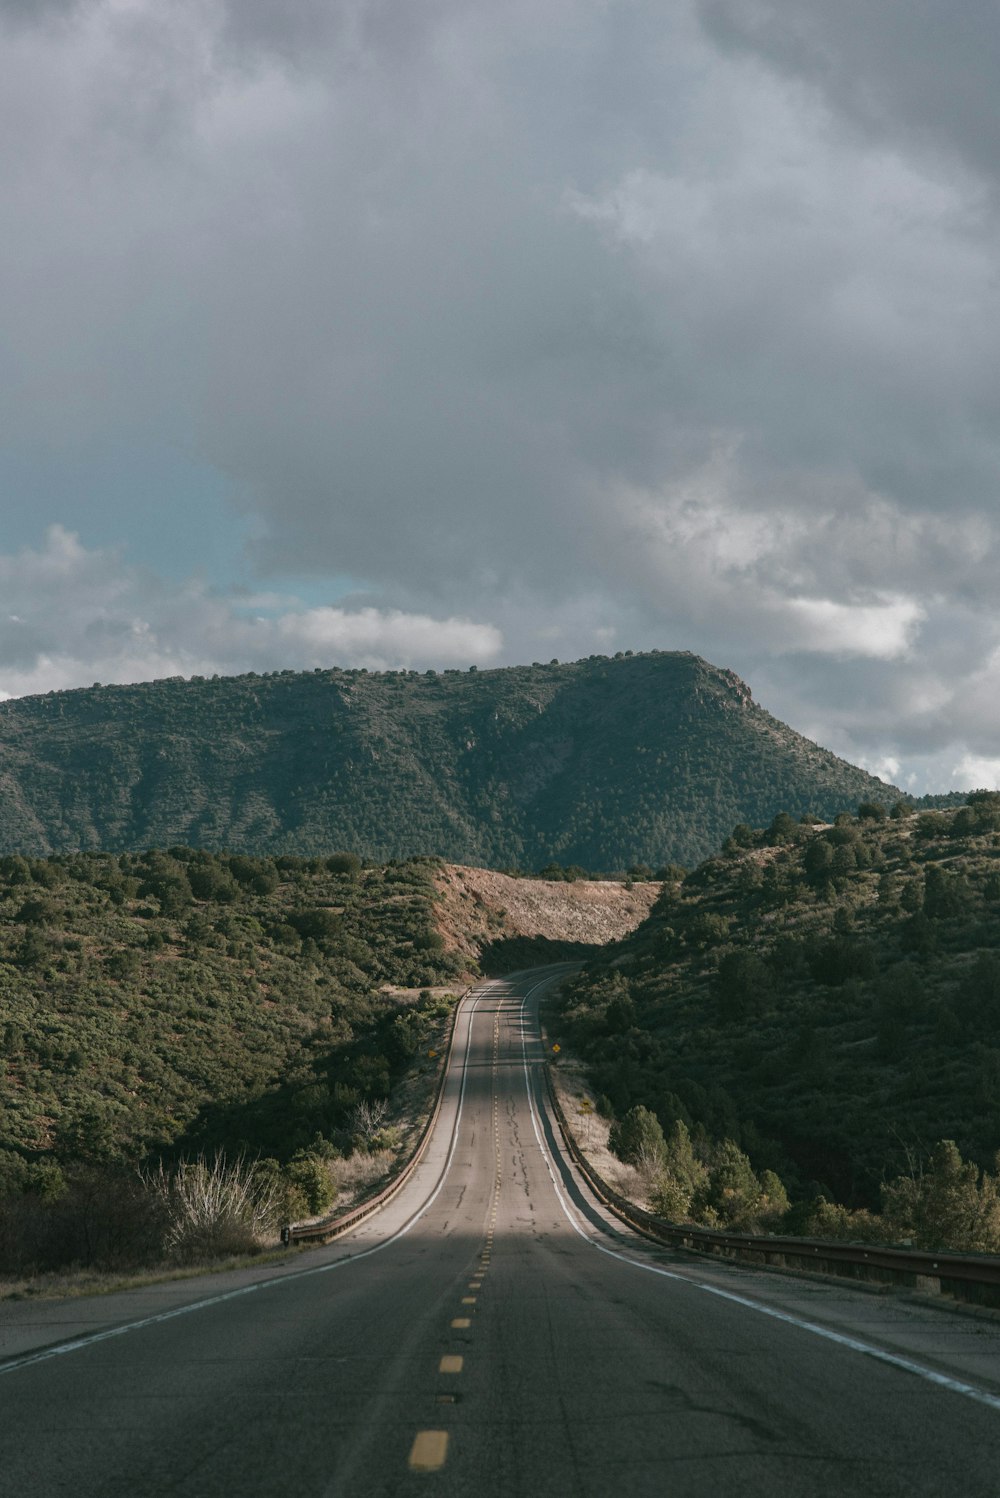 Carretera de hormigón gris entre montañas verdes bajo un cielo gris